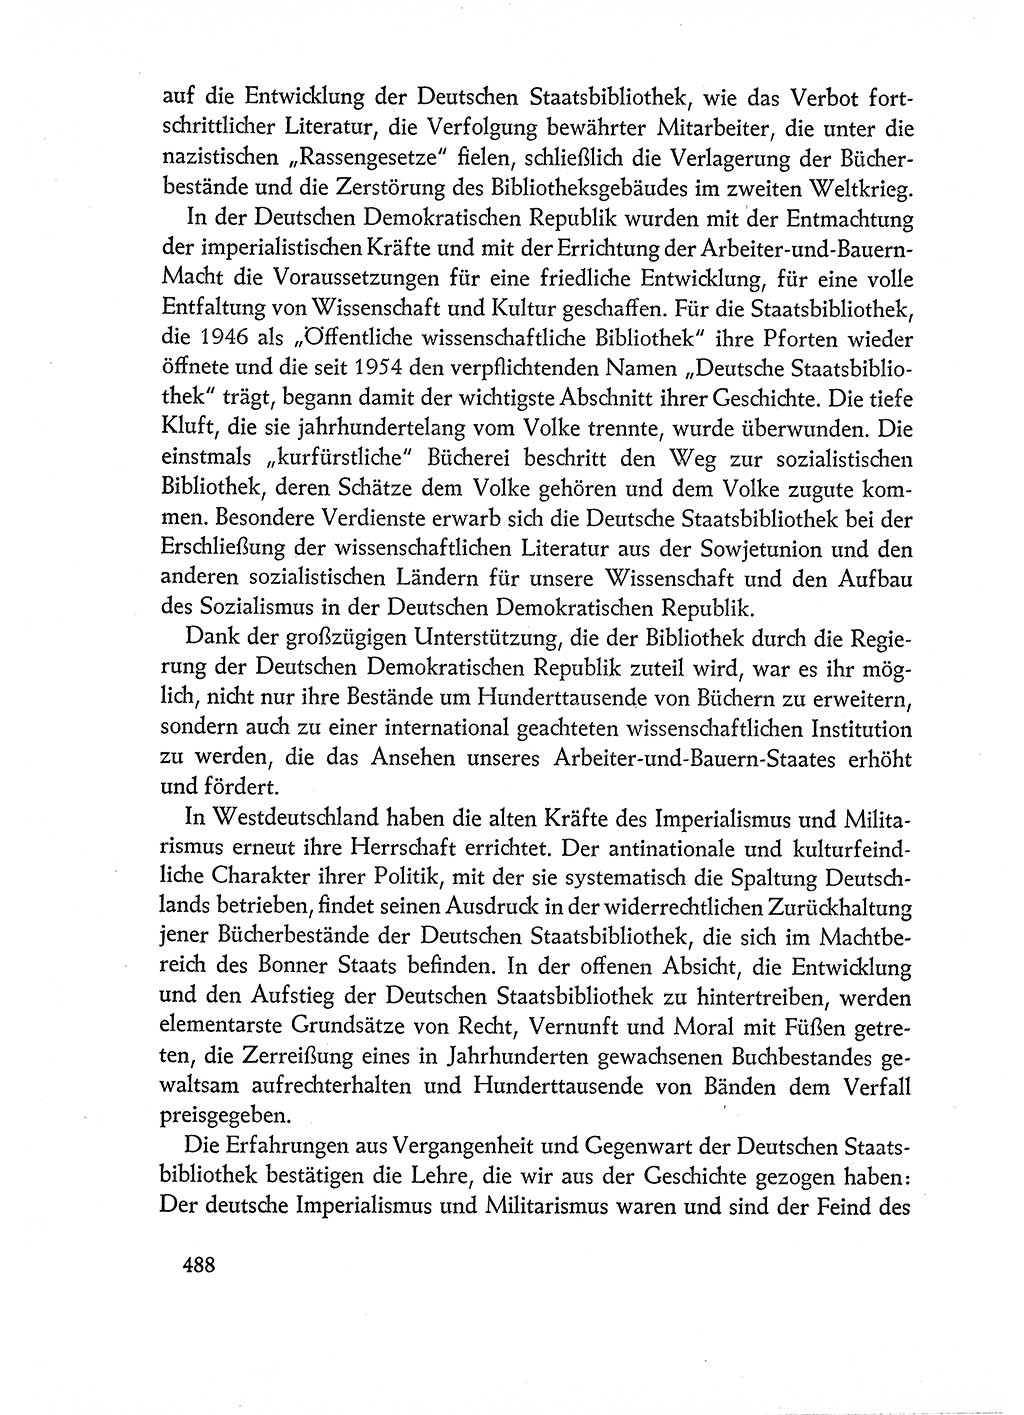 Dokumente der Sozialistischen Einheitspartei Deutschlands (SED) [Deutsche Demokratische Republik (DDR)] 1960-1961, Seite 488 (Dok. SED DDR 1960-1961, S. 488)